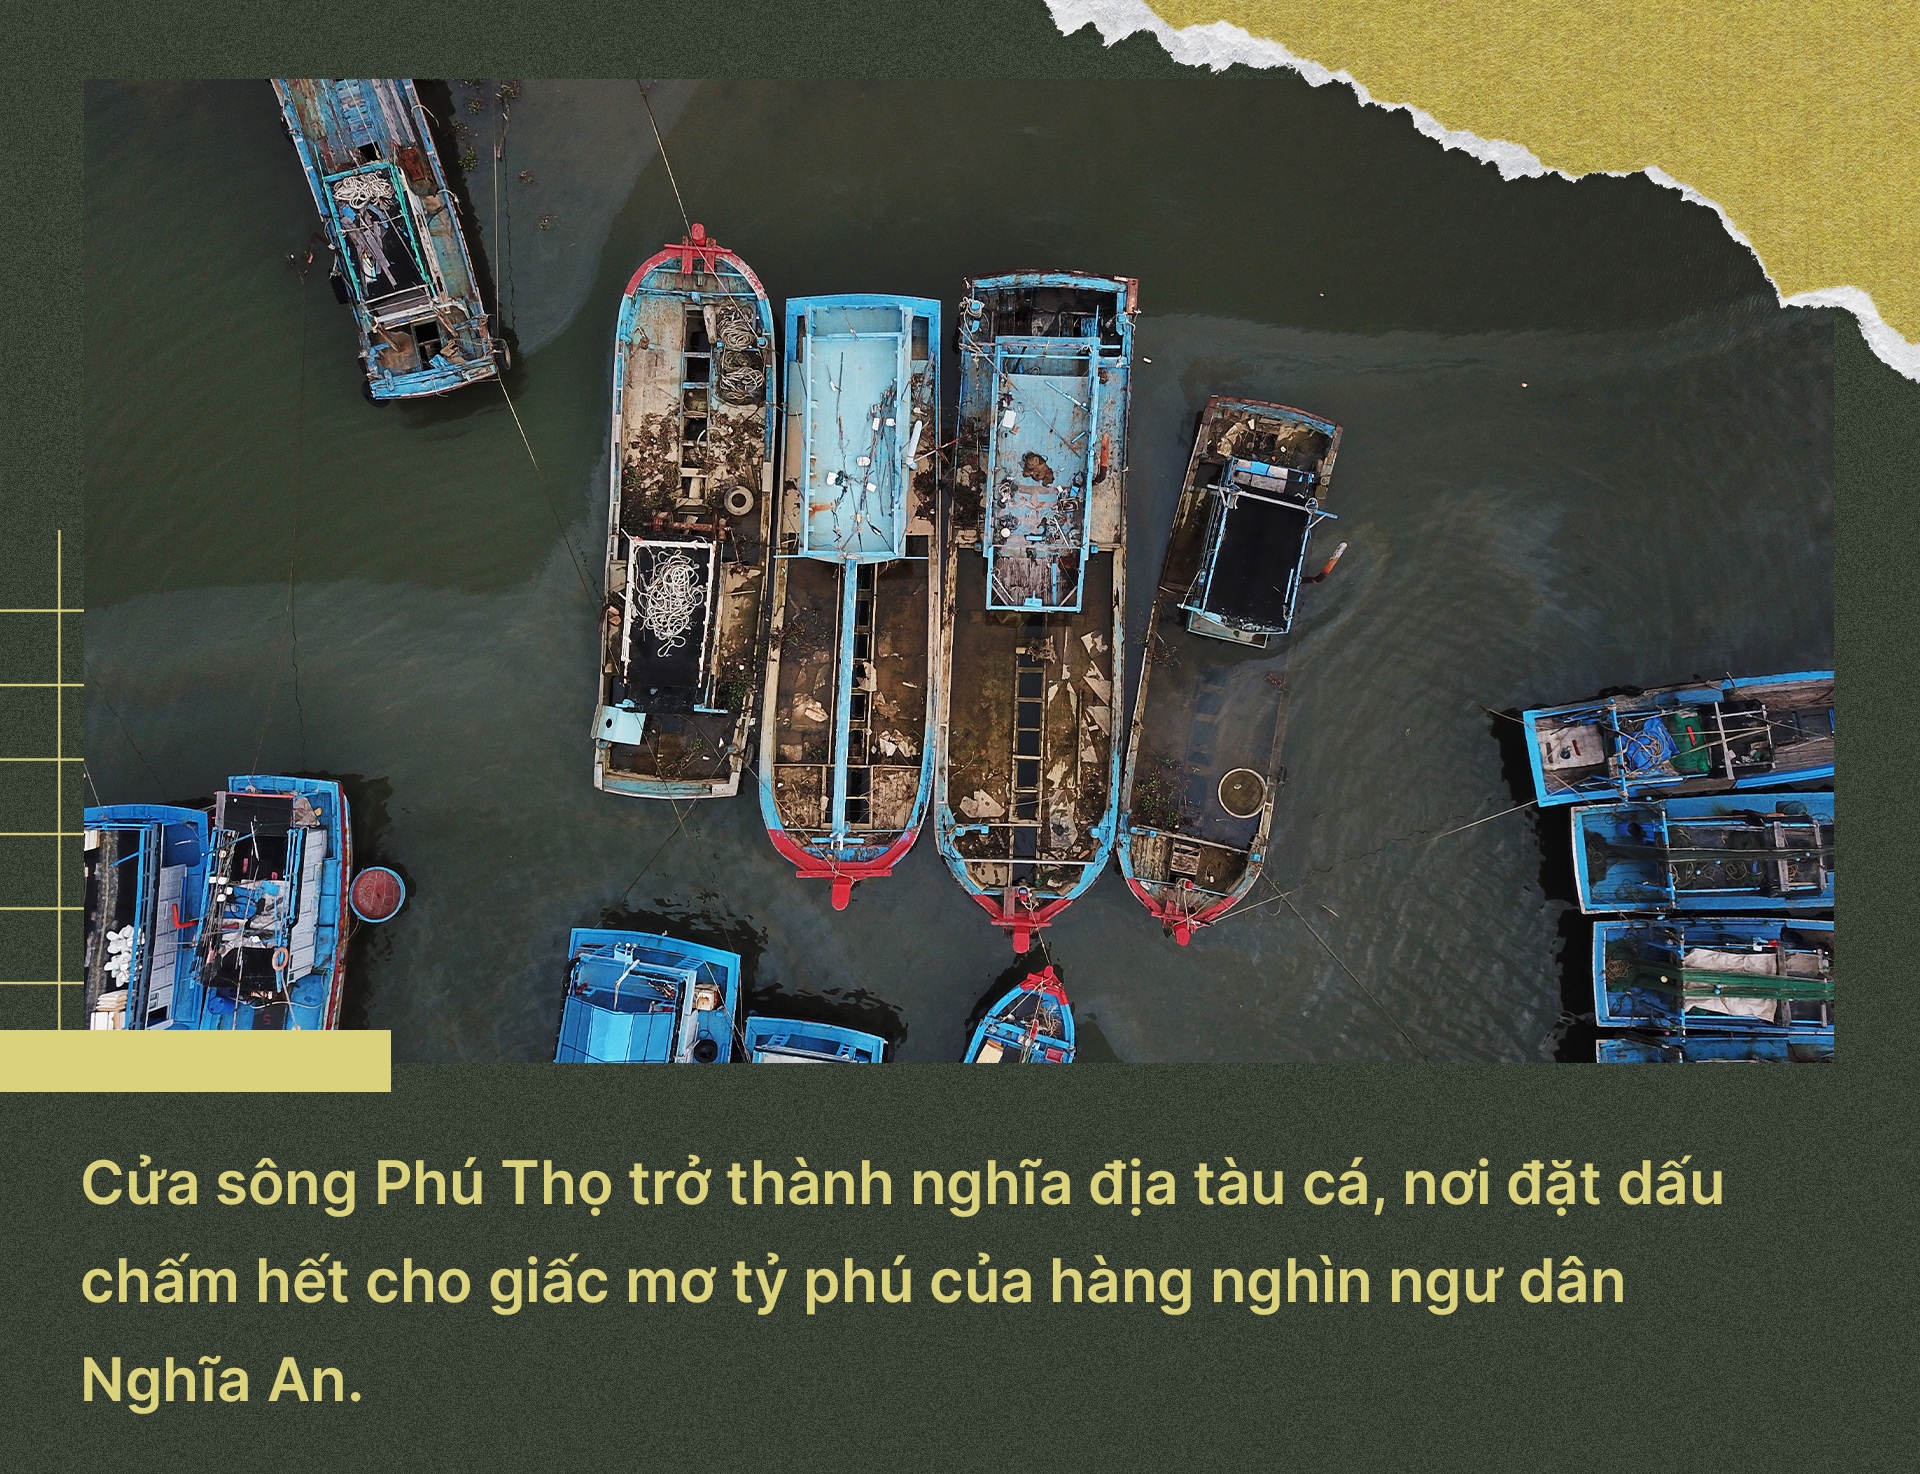 Nghĩa địa tàu cá nơi cửa sông, dấu chấm hết cho làng tỷ phú tại Quảng Ngai - 13